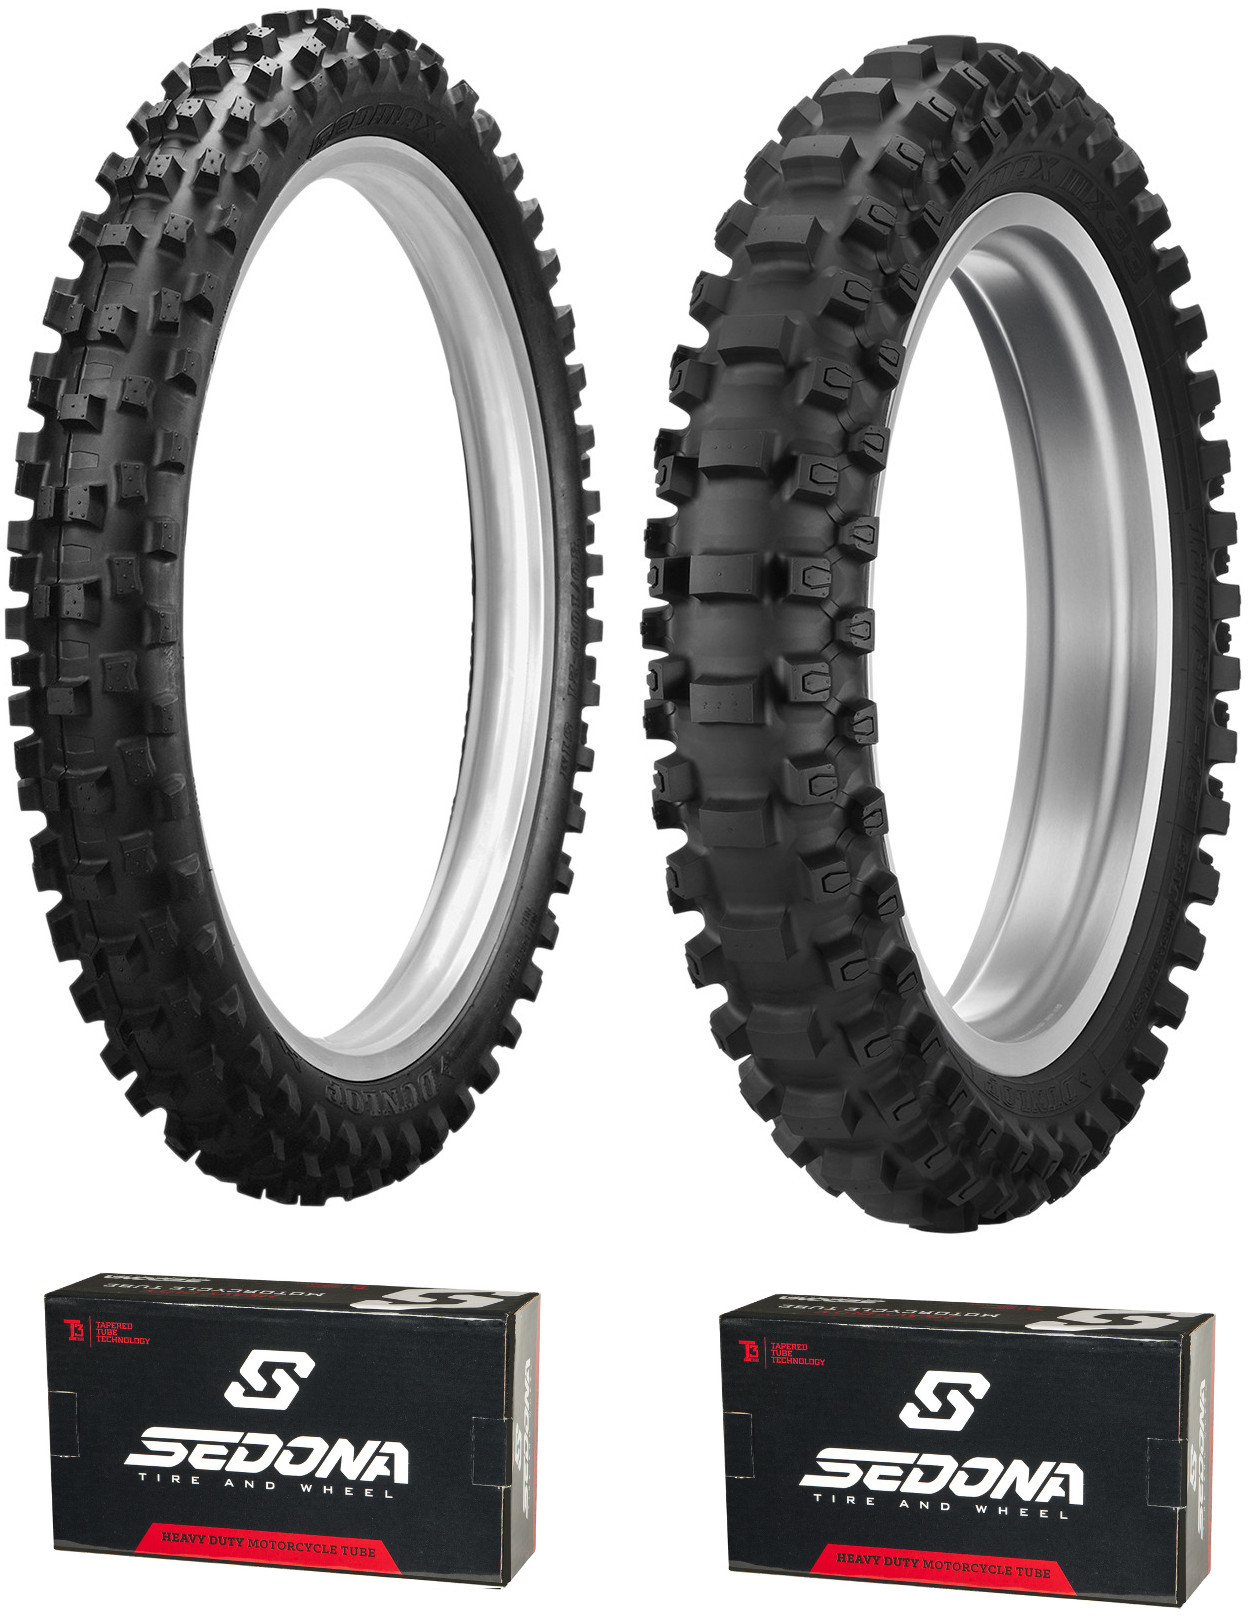 MX3S 80/100-21 & MX33 110/90-19 Tire Kit - w/ HD Sedona Tubes - Click Image to Close